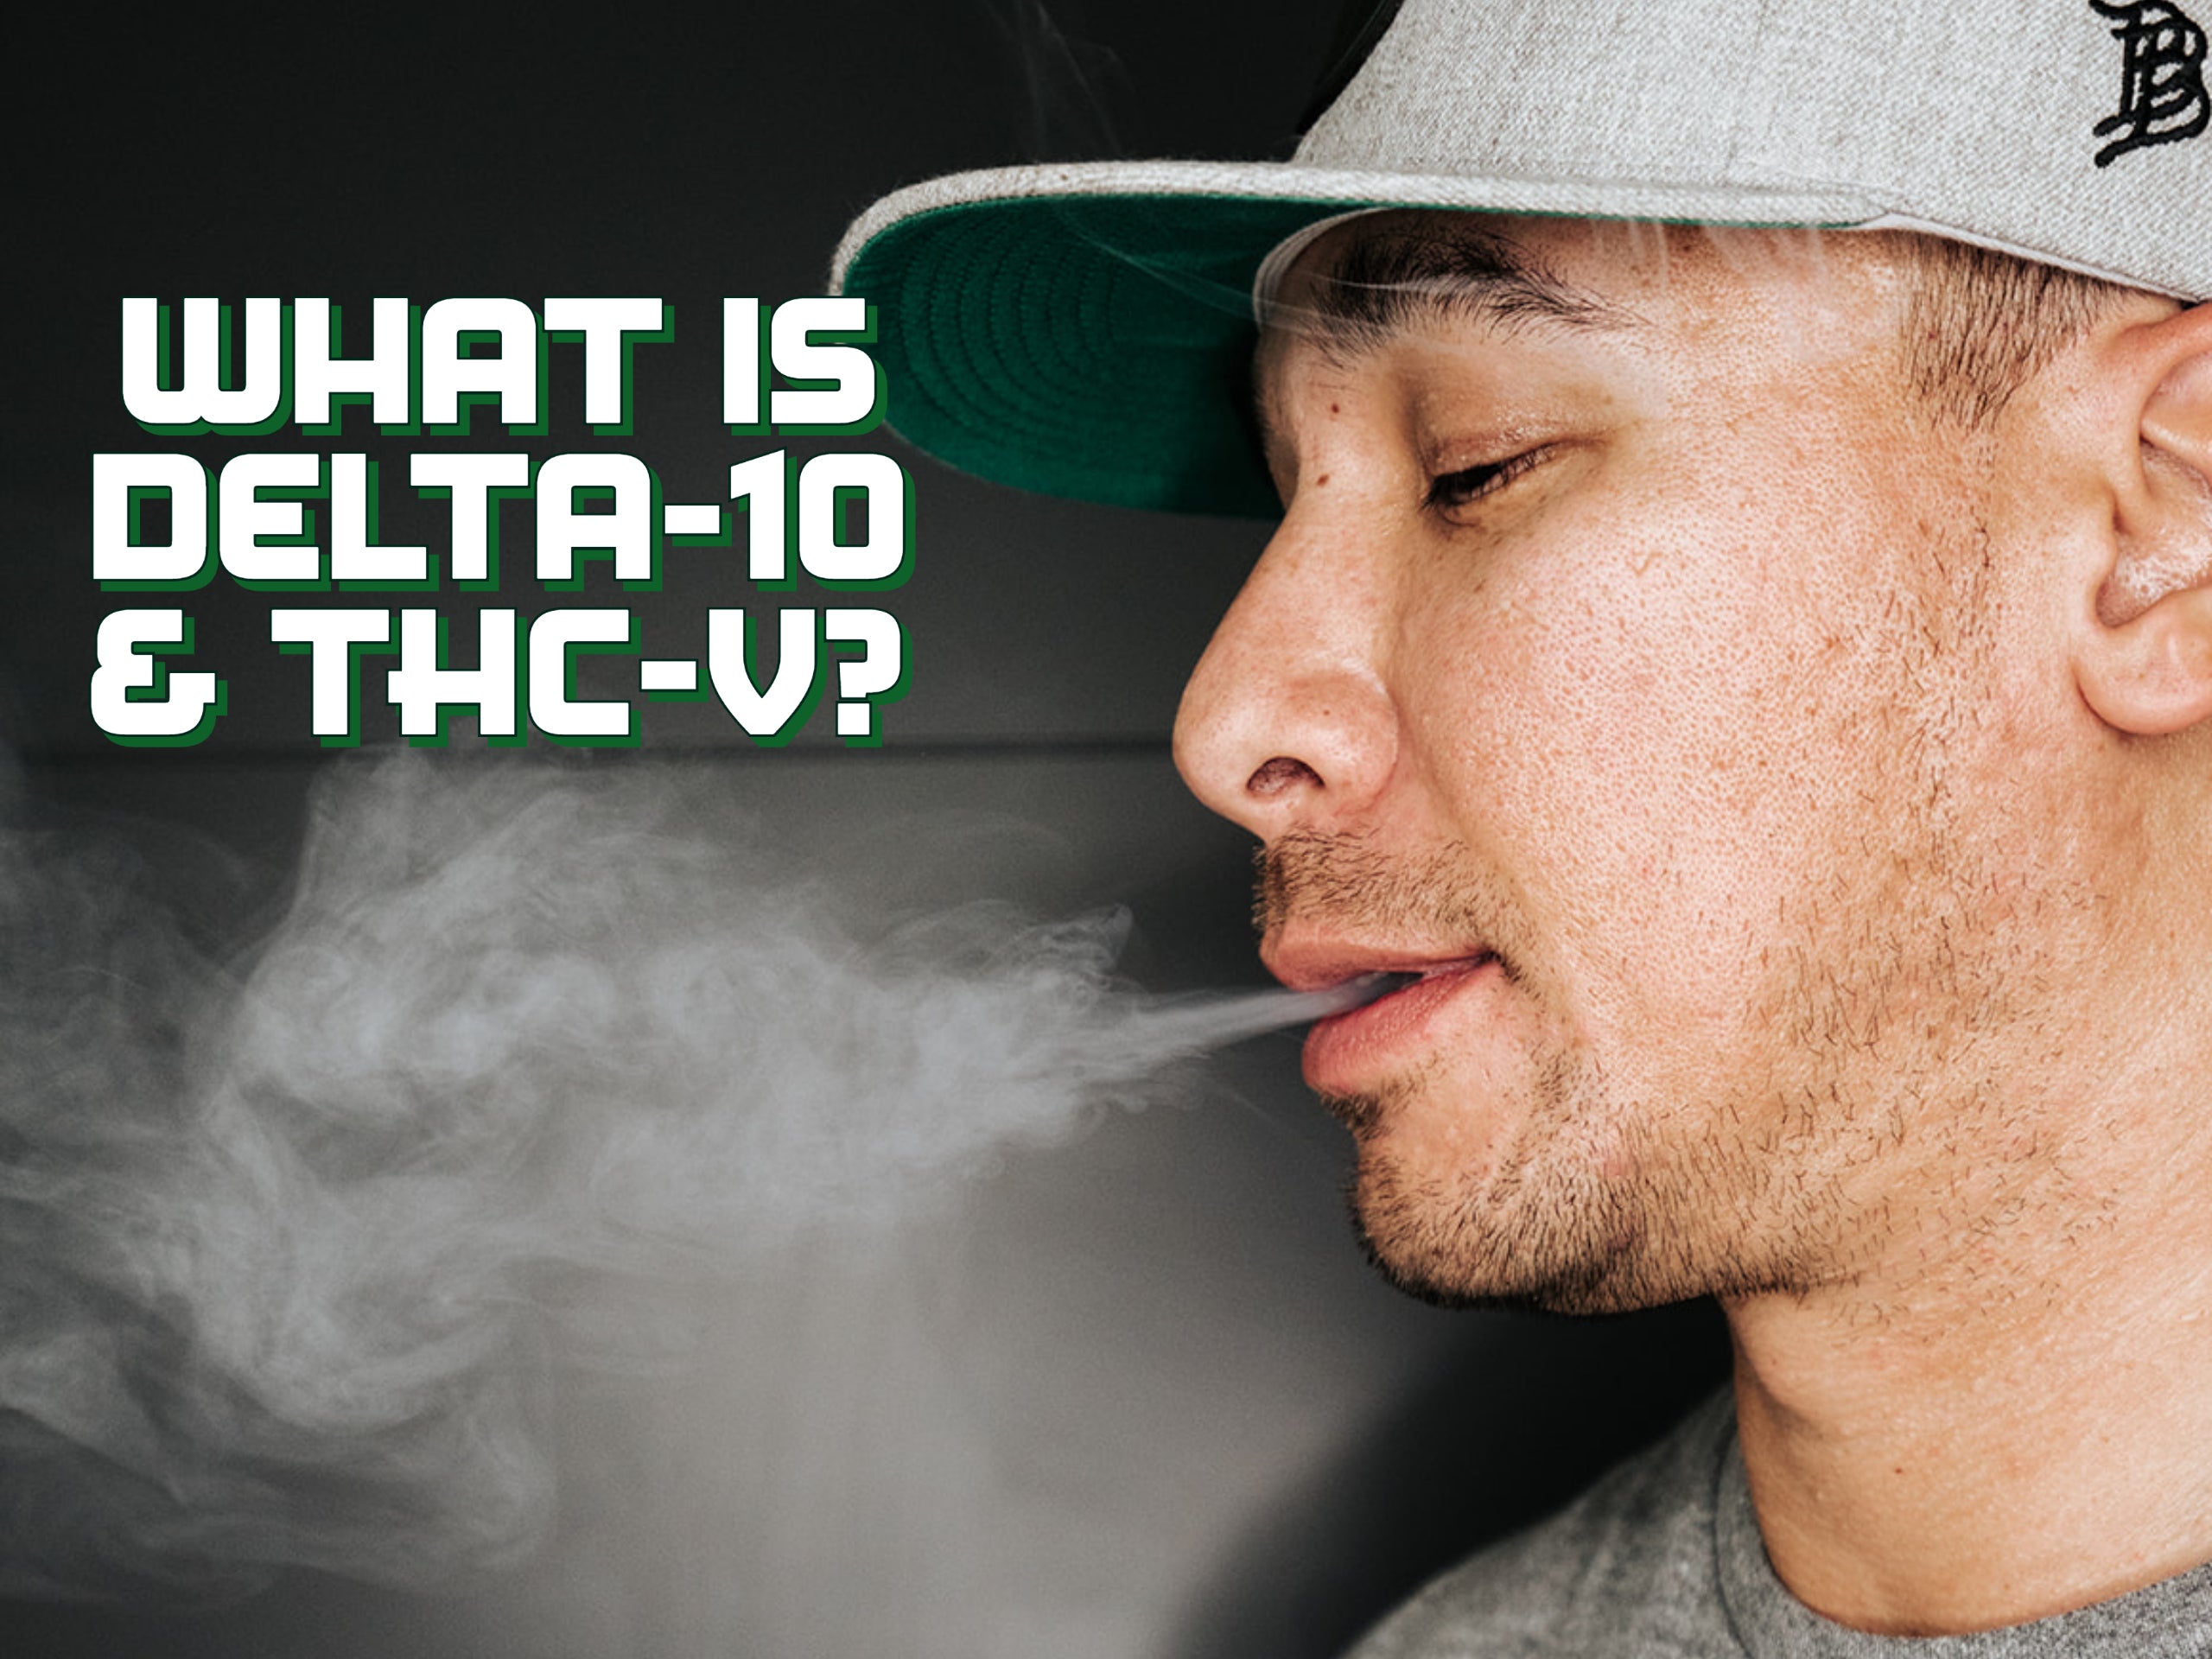 Hello New Cannabinoids: Delta 10 and THC-V